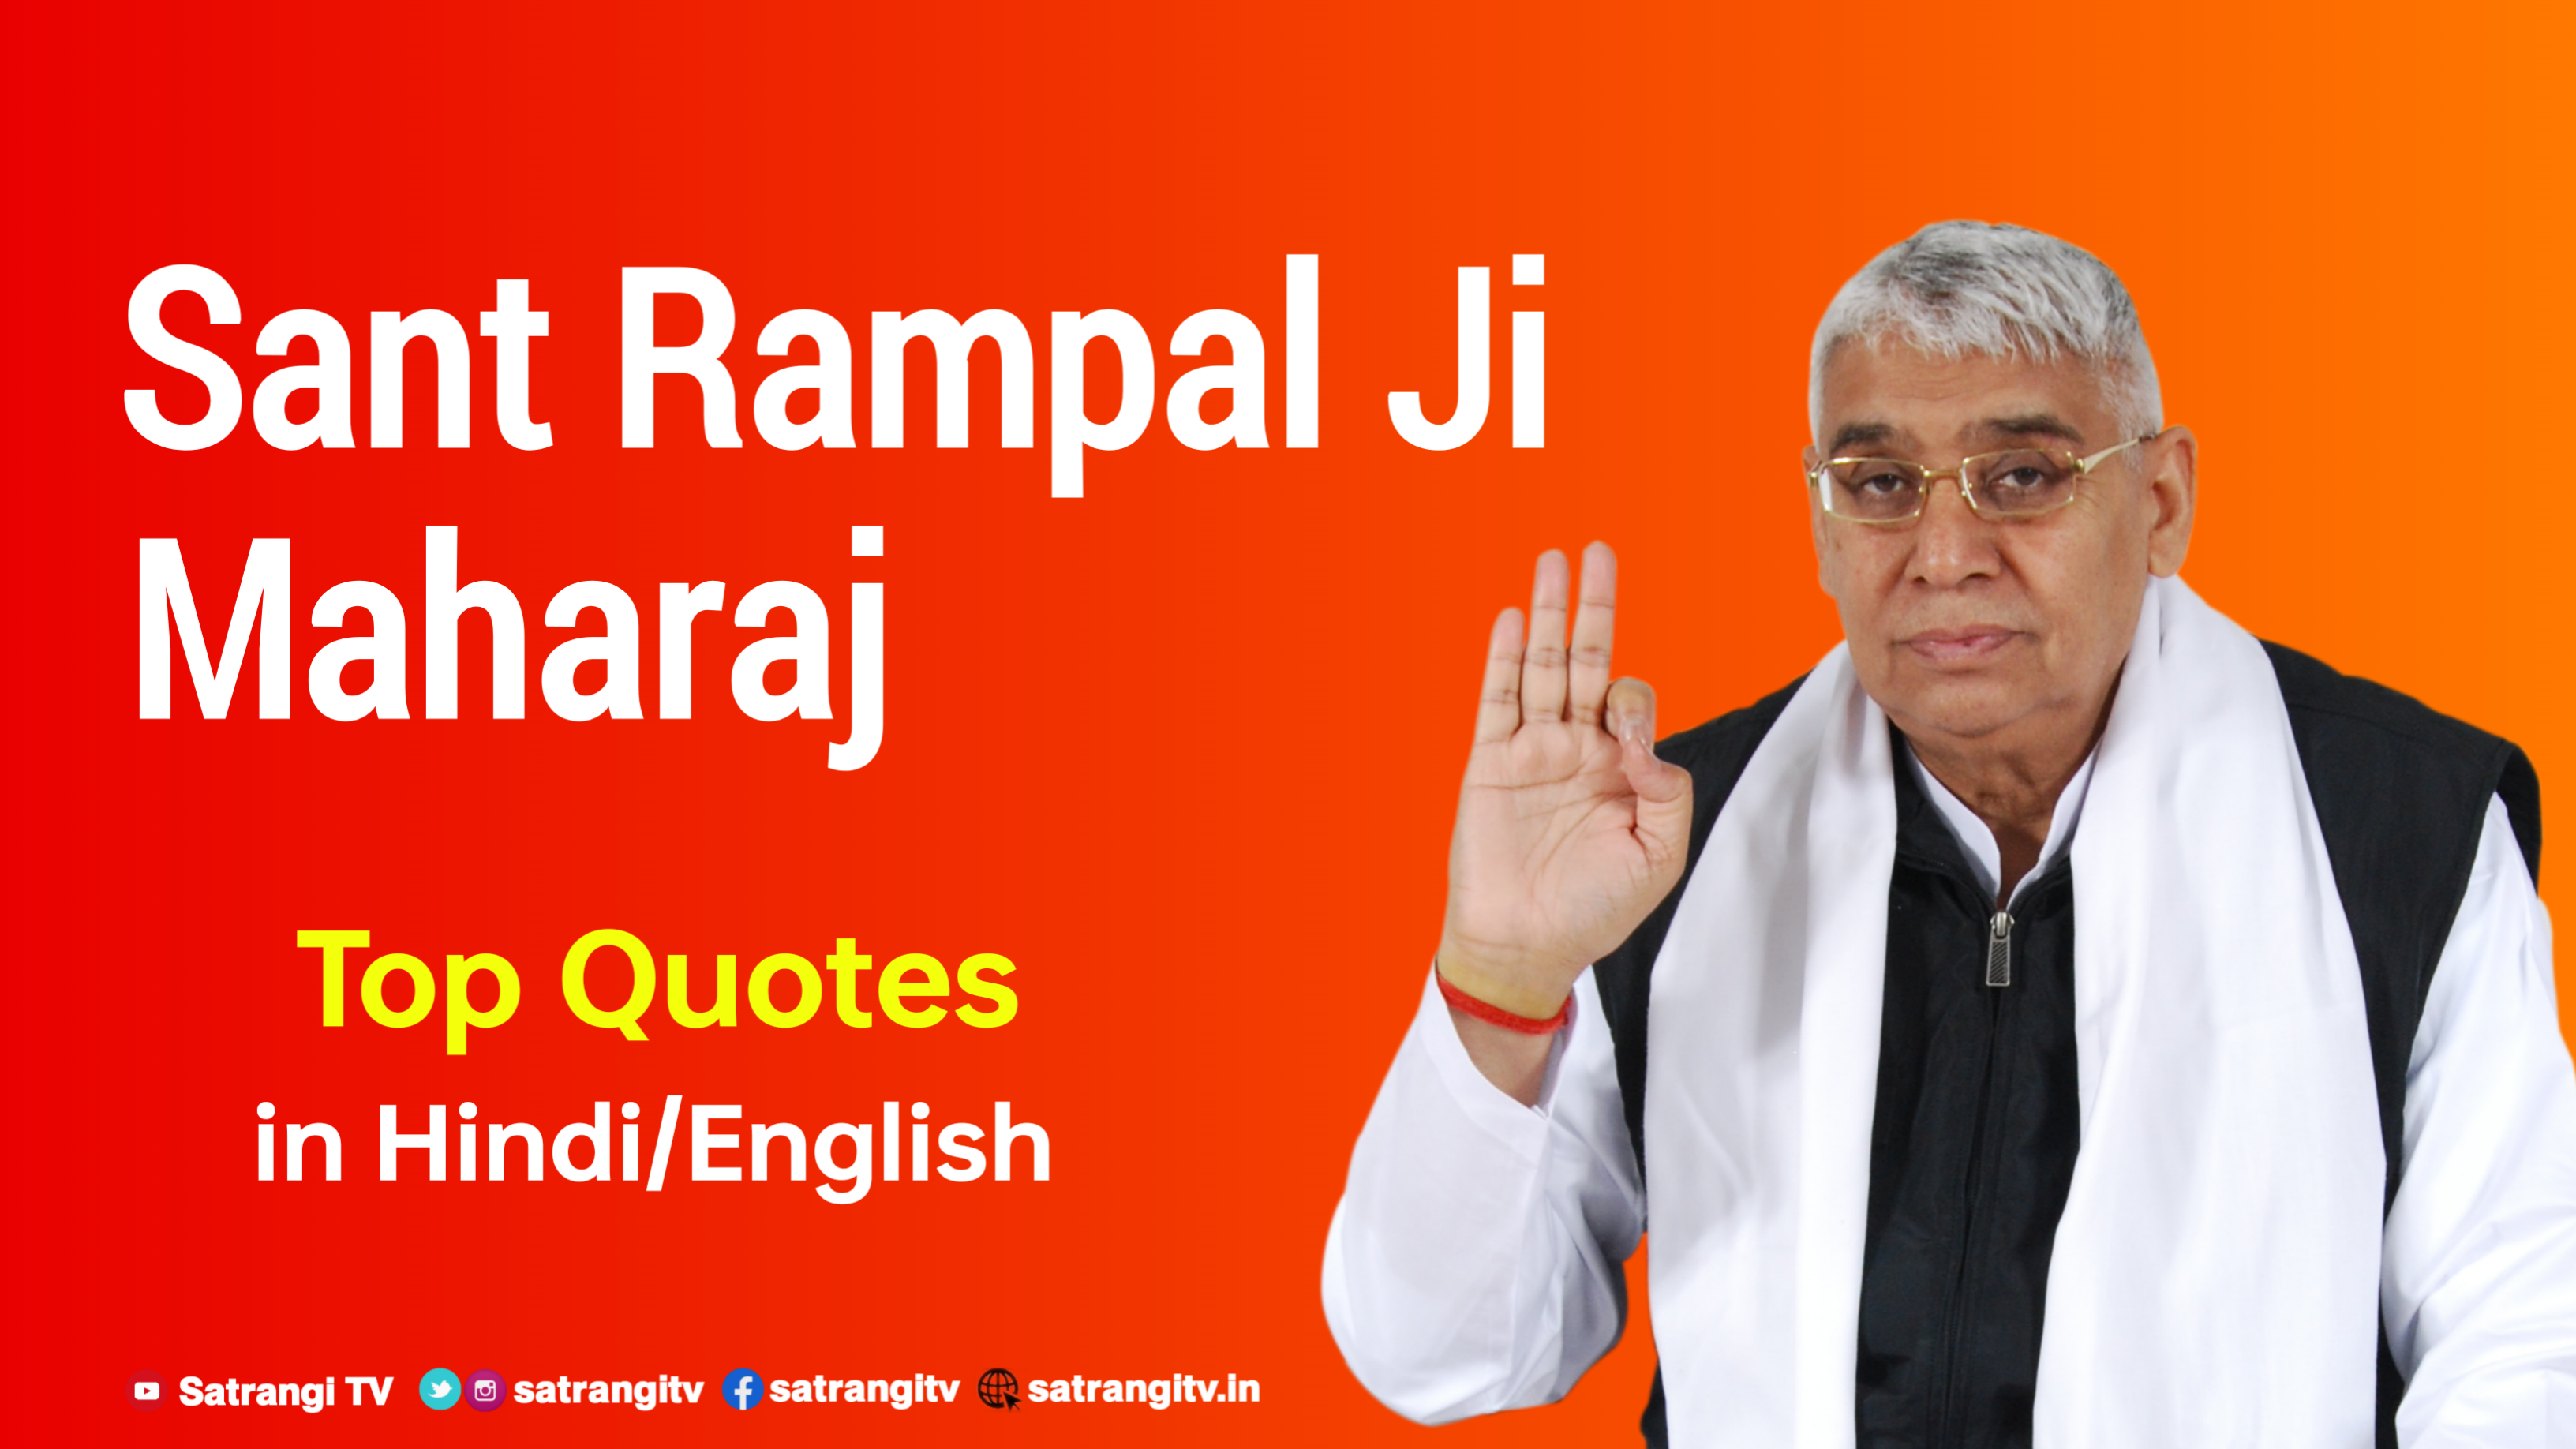 Sant Rampal Ji Maharaj Top Quotes in Hindi and English